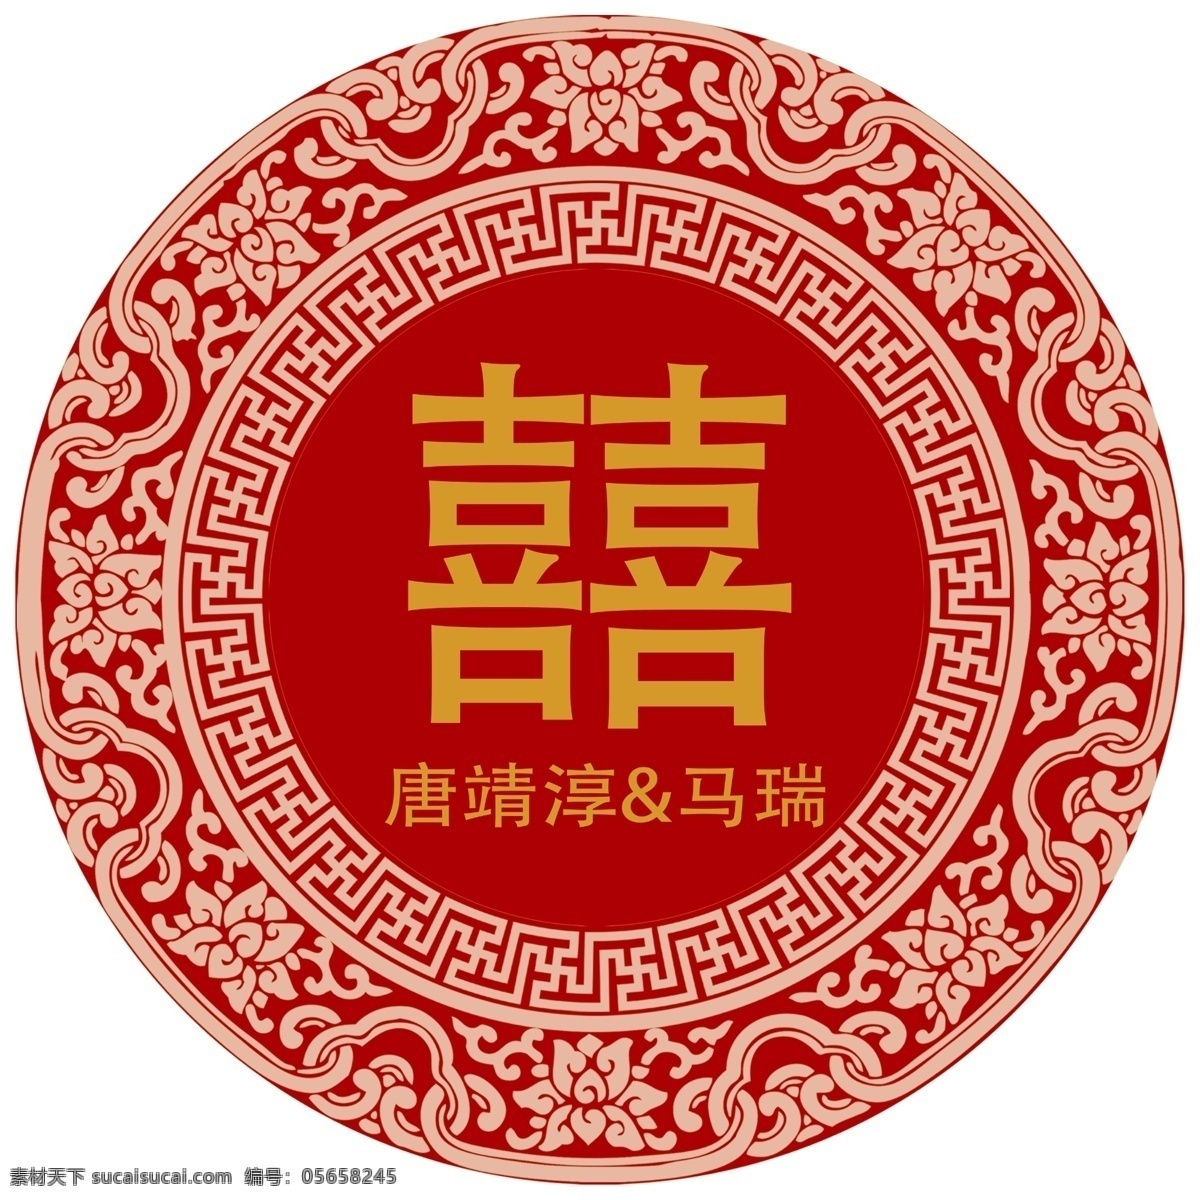 中式 婚礼 素材图片 中式婚礼素材 中式婚礼 圆形双喜 双喜 古典喜字